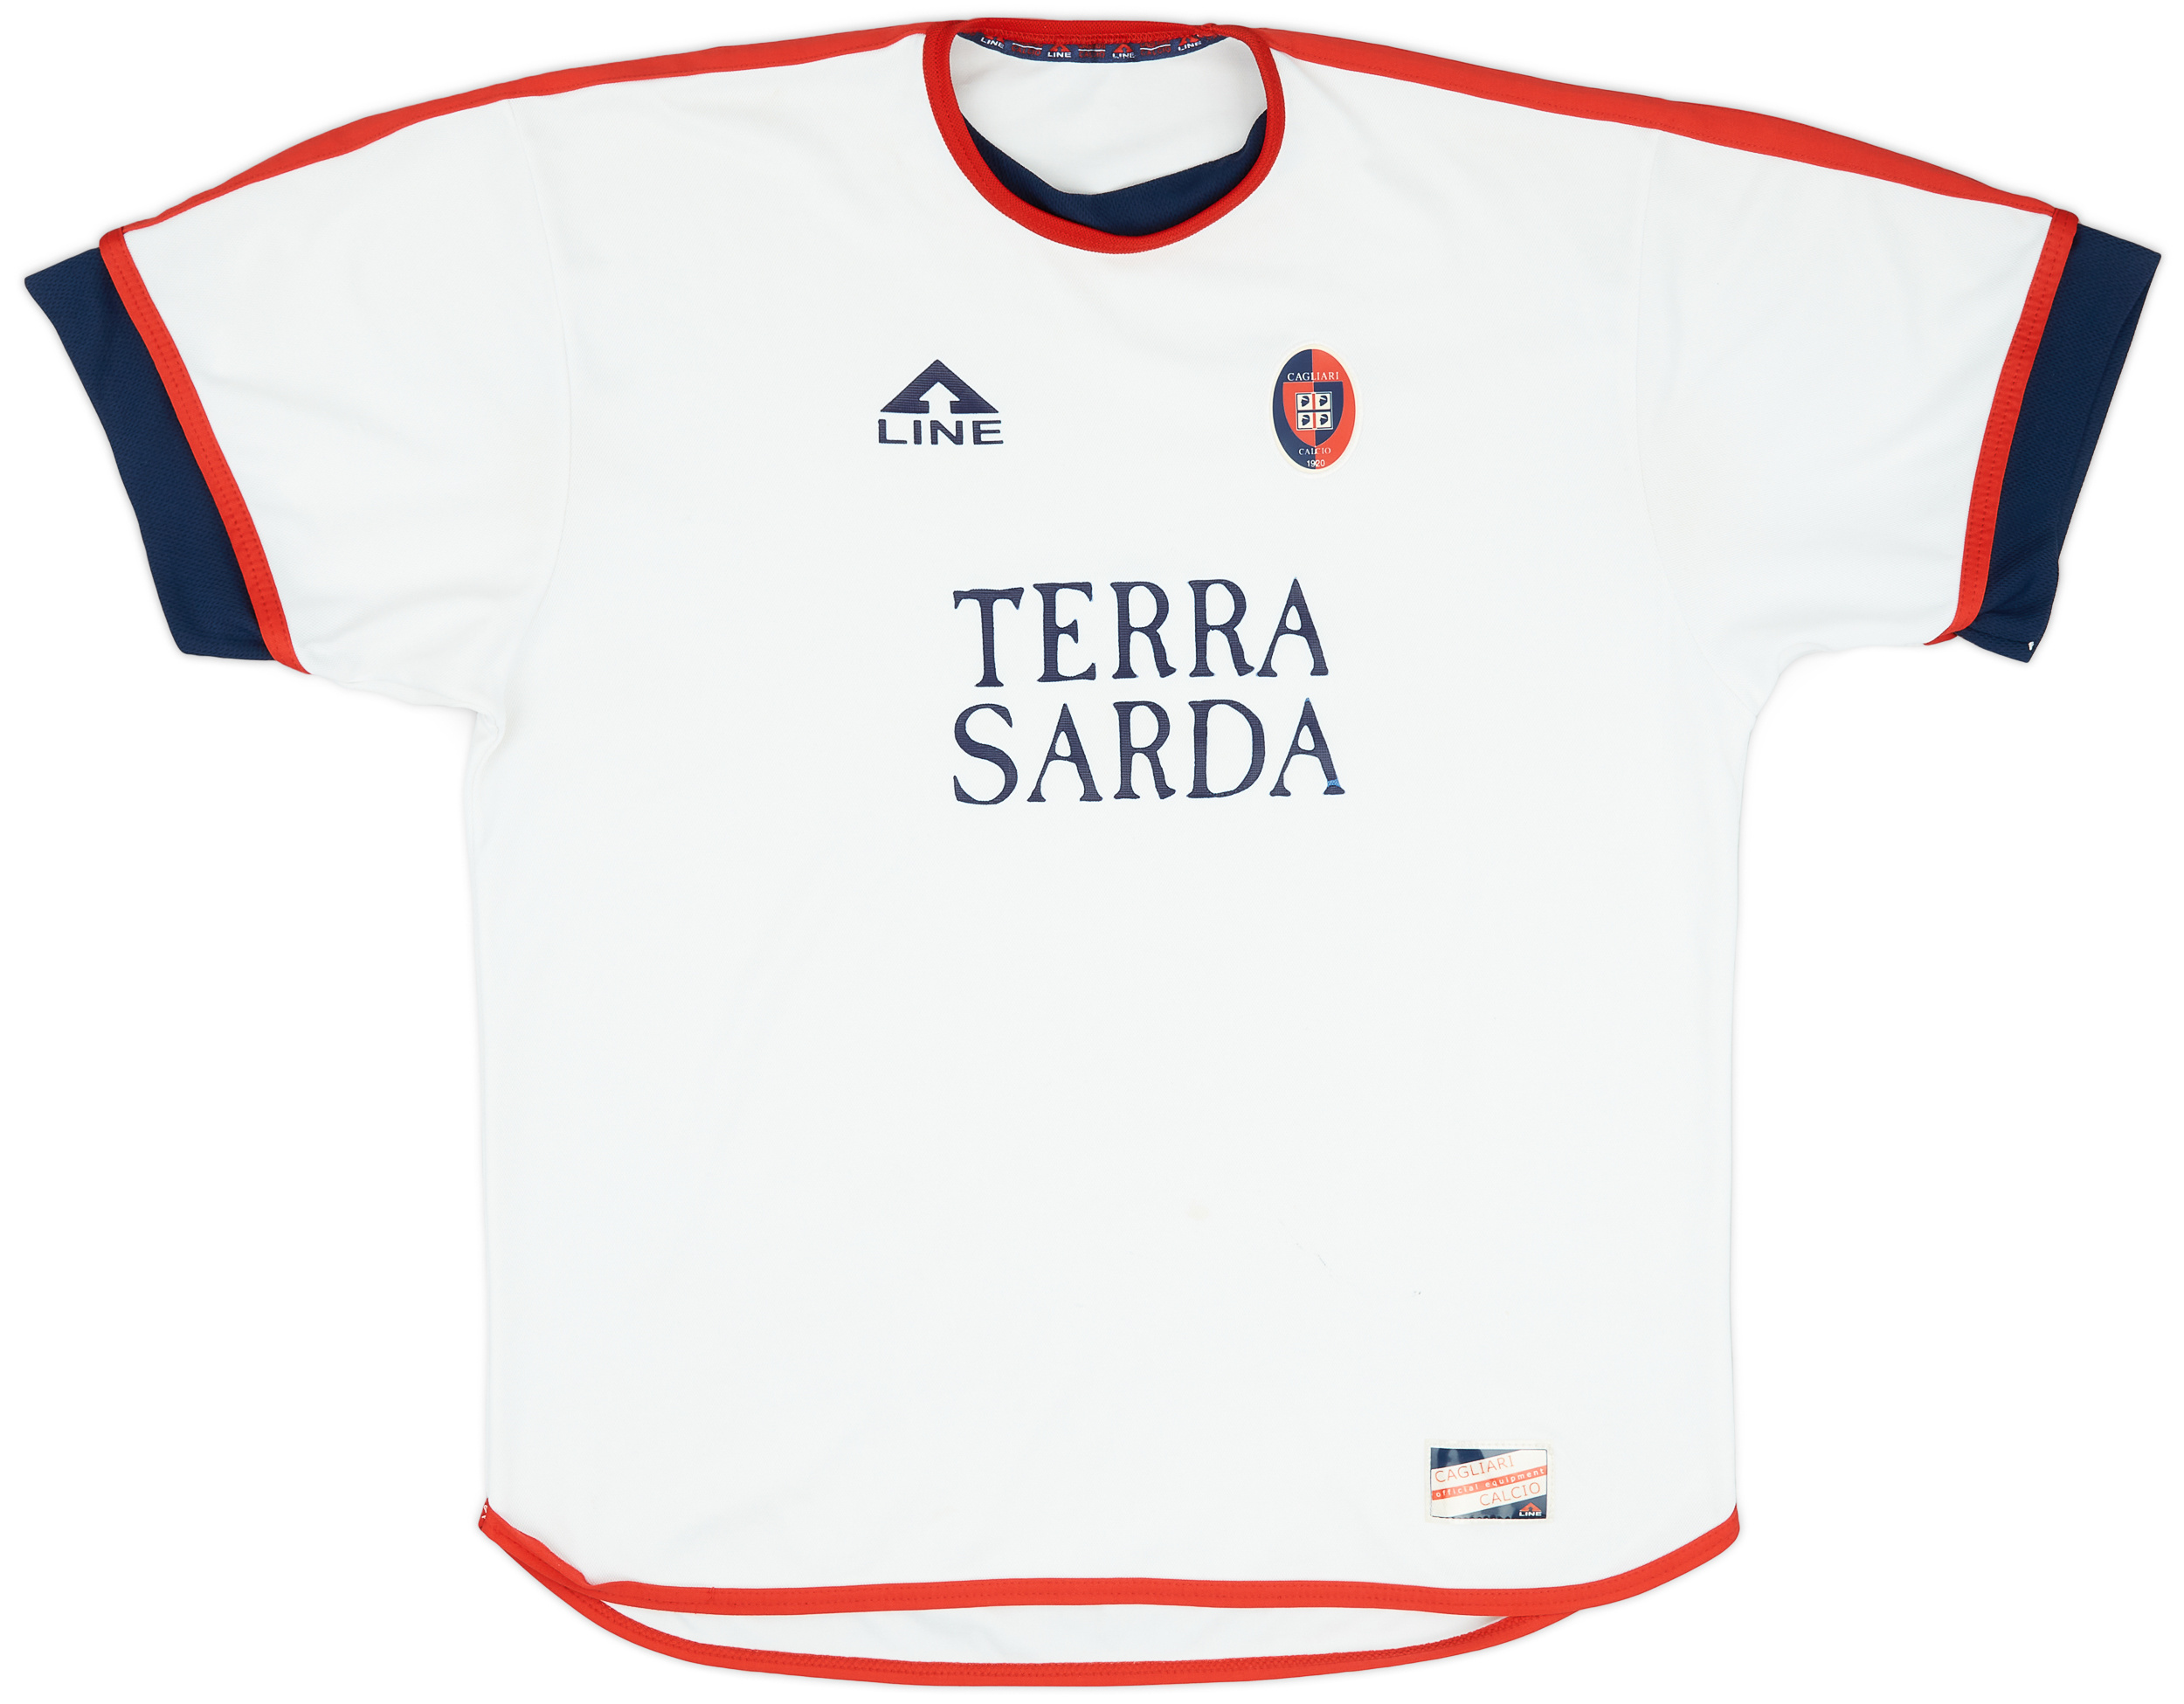 Cagliari  Fora camisa (Original)